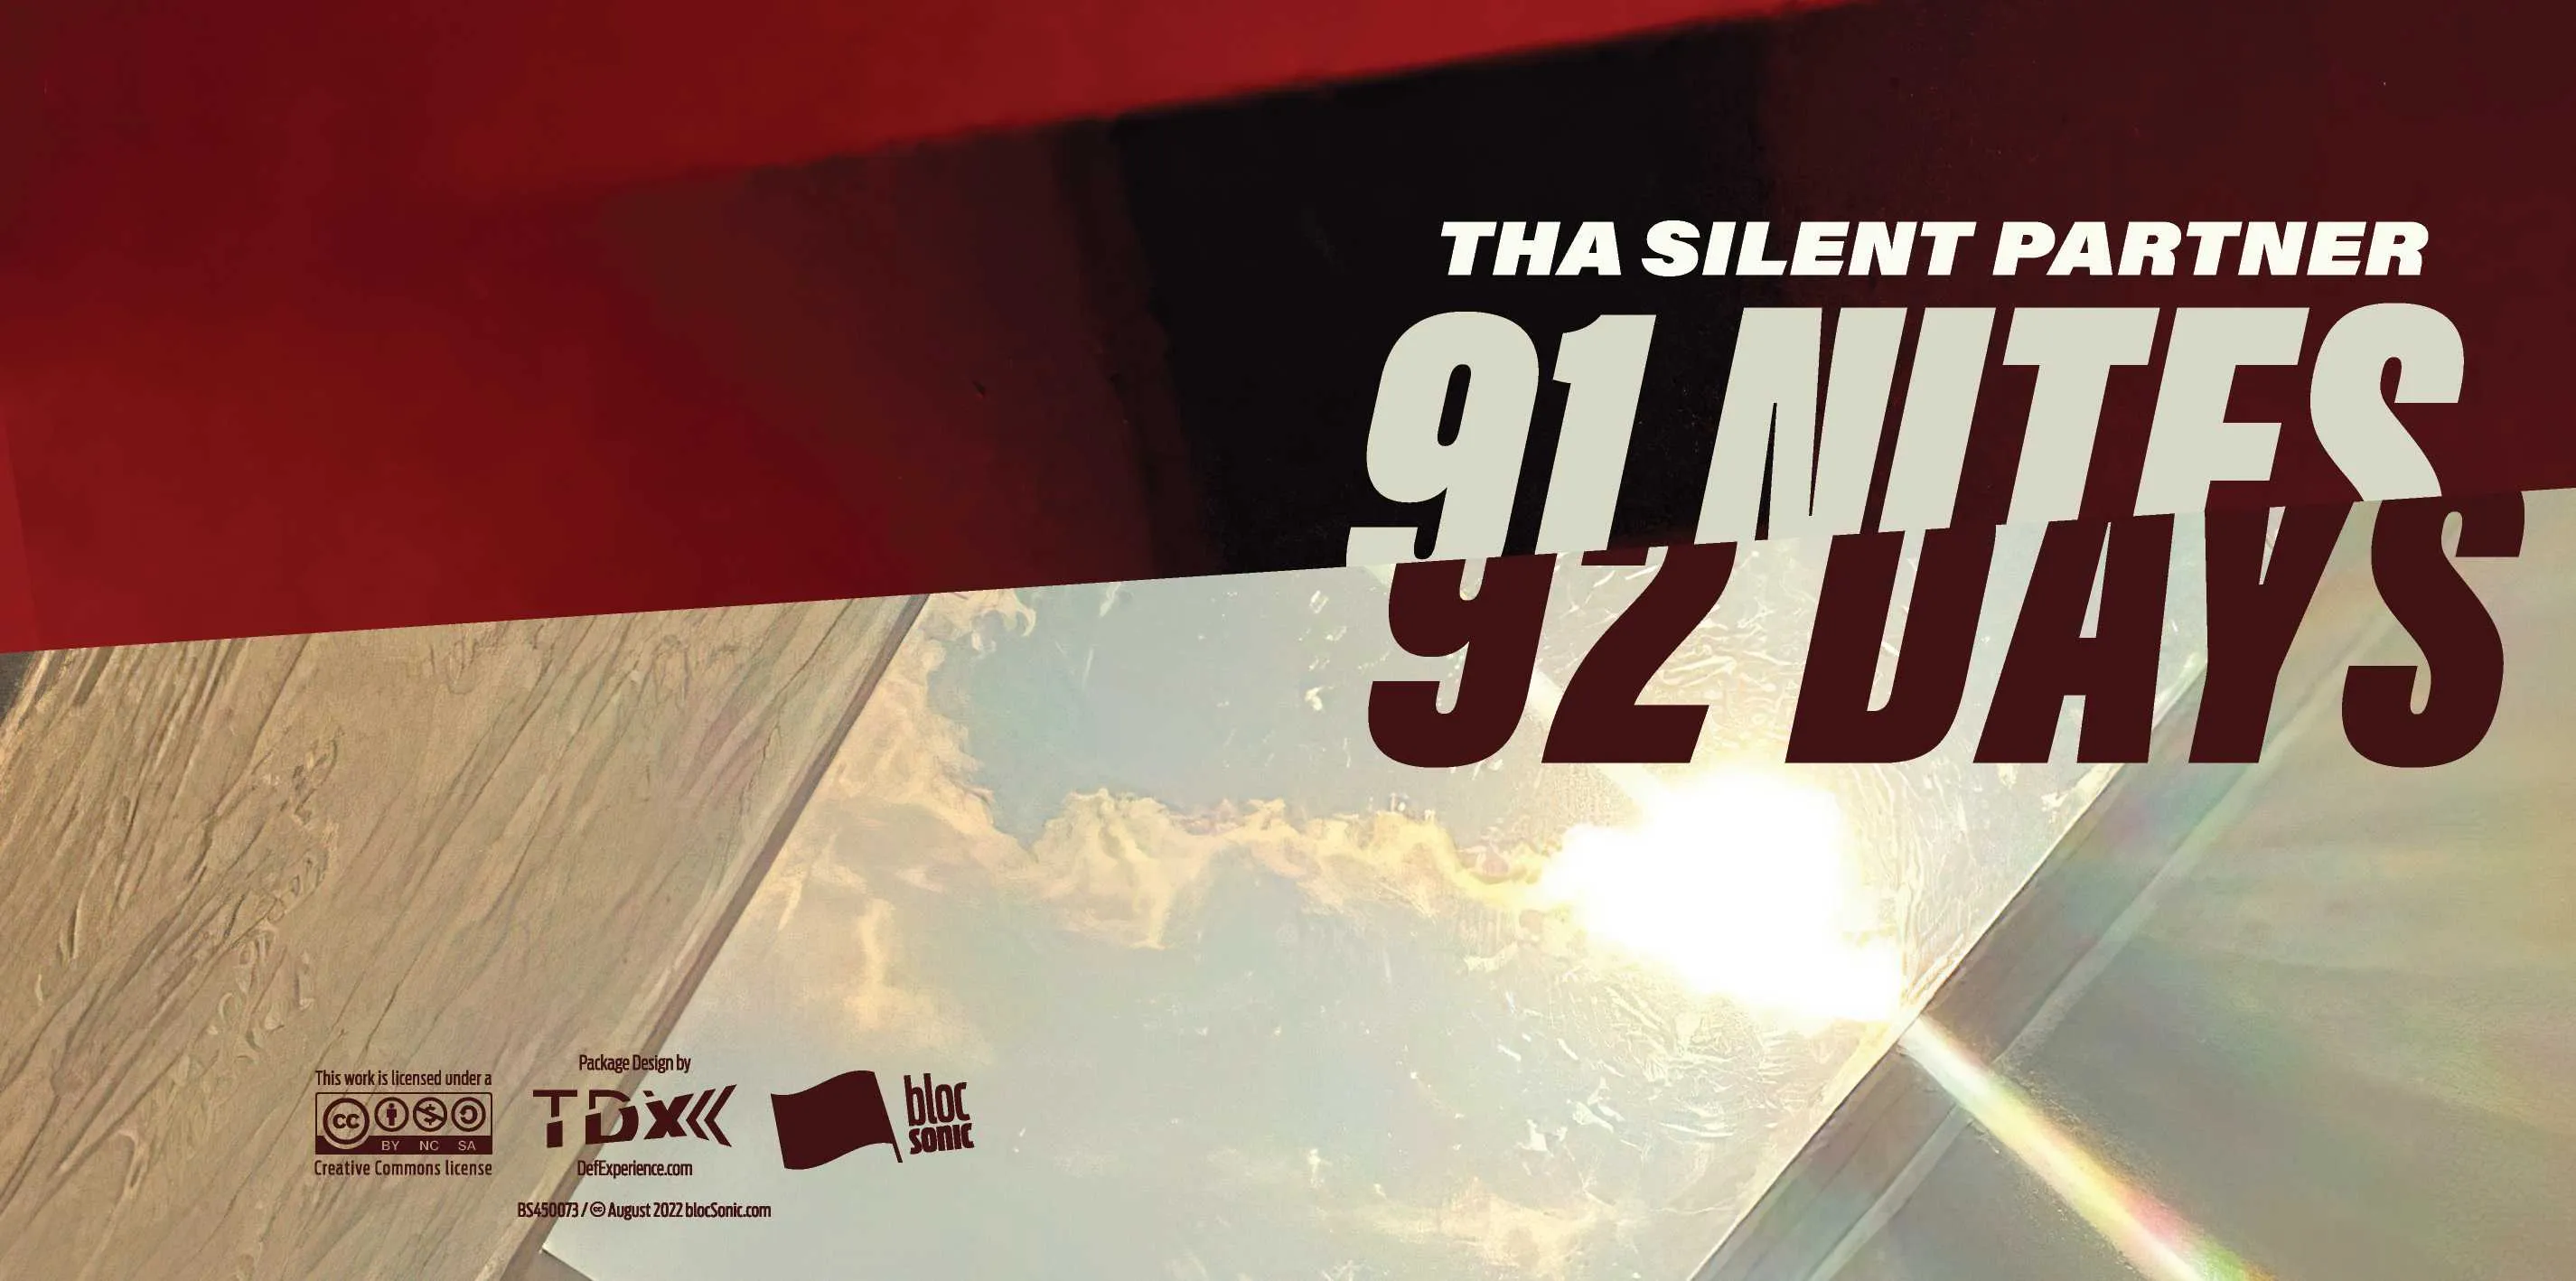 Album insert for “91 NITES… 92 DAYS” by Tha Silent Partner